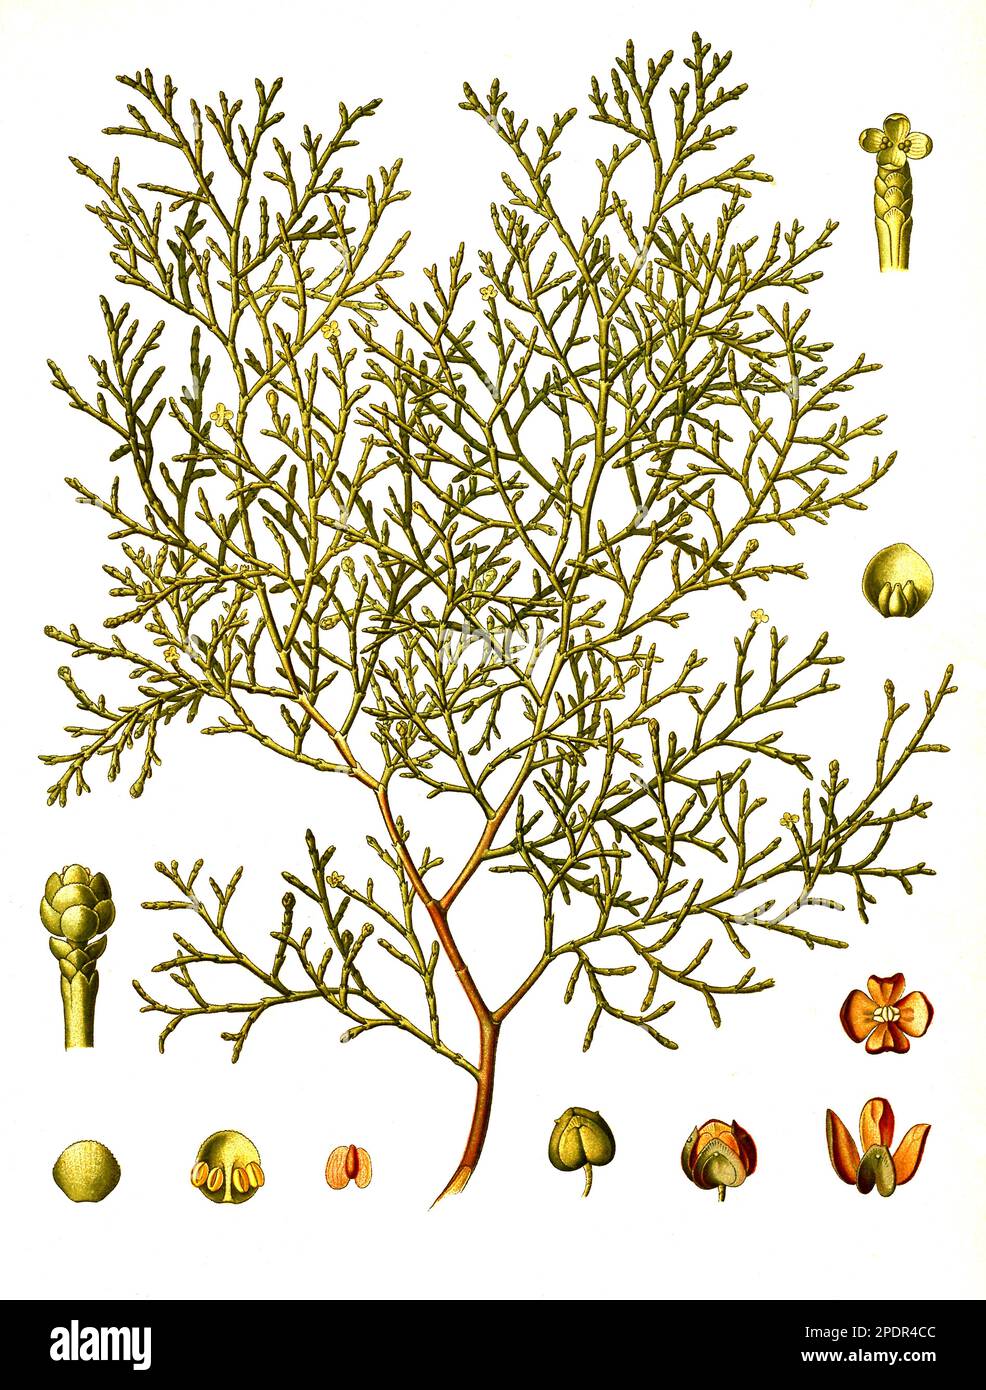 Heilpflanze, Sandarakbaum (Tetraclinis articulata), auch Gliederzypresse oder Berberthuja genannt, Pflanzenart der Gattung Tetraclinis, Historisch, digital restaurierte Reproduktion von einer Vorlage aus dem 19. Jahrhundert, Stock Photo